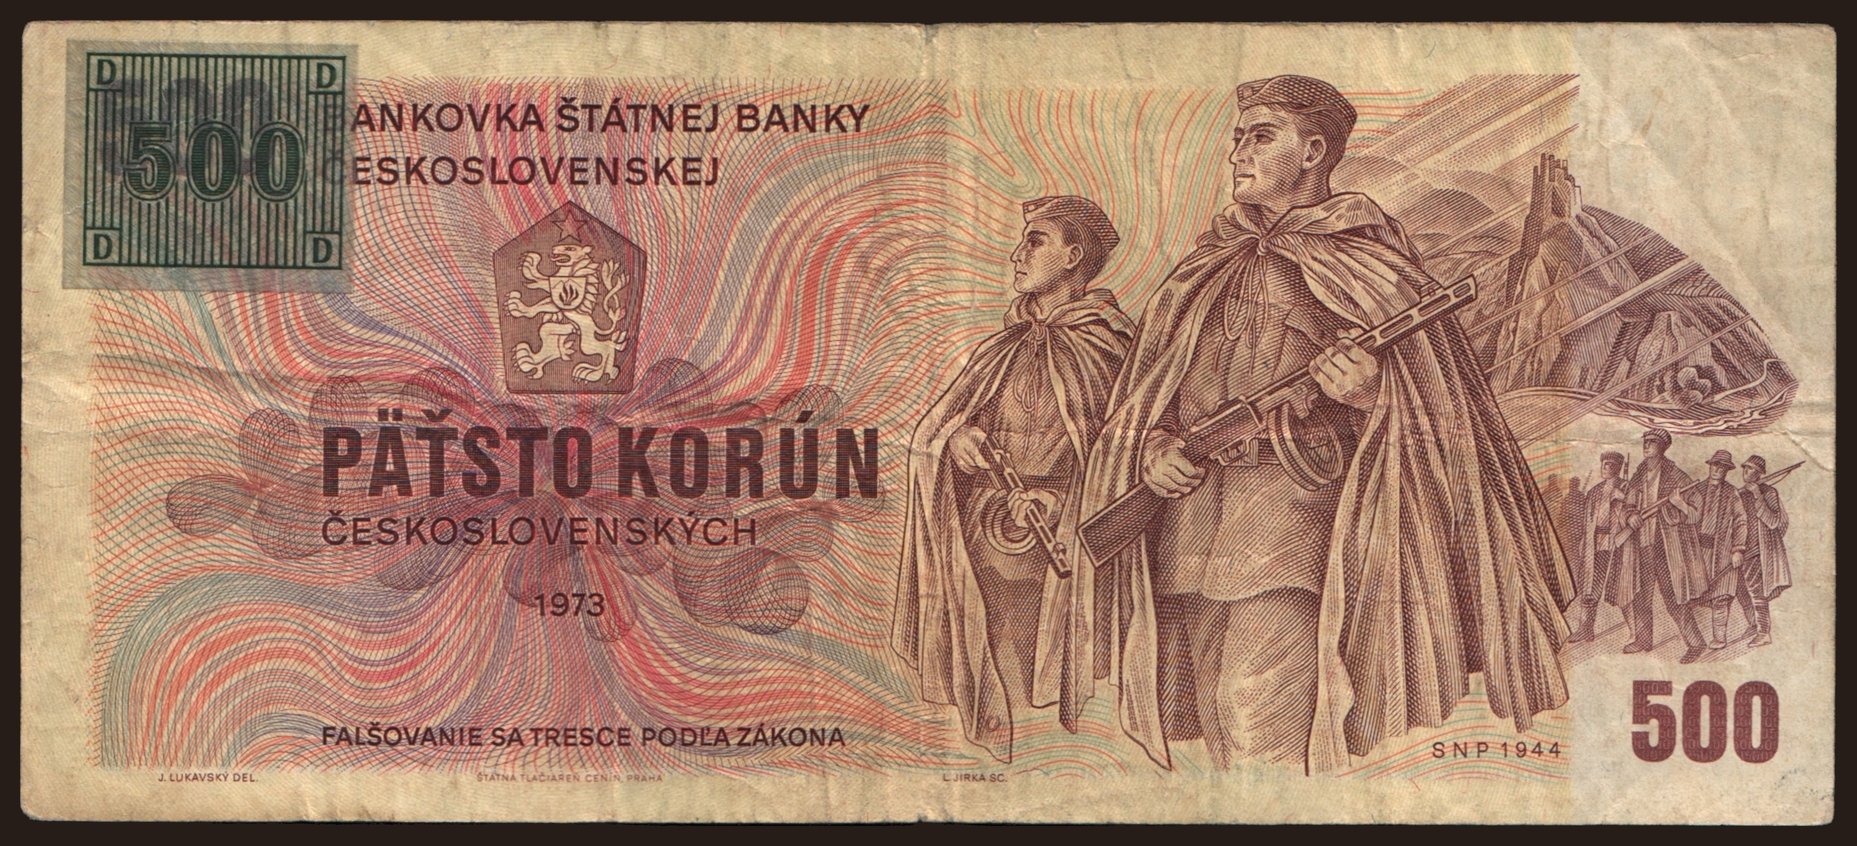 500 korun, 1973(93)